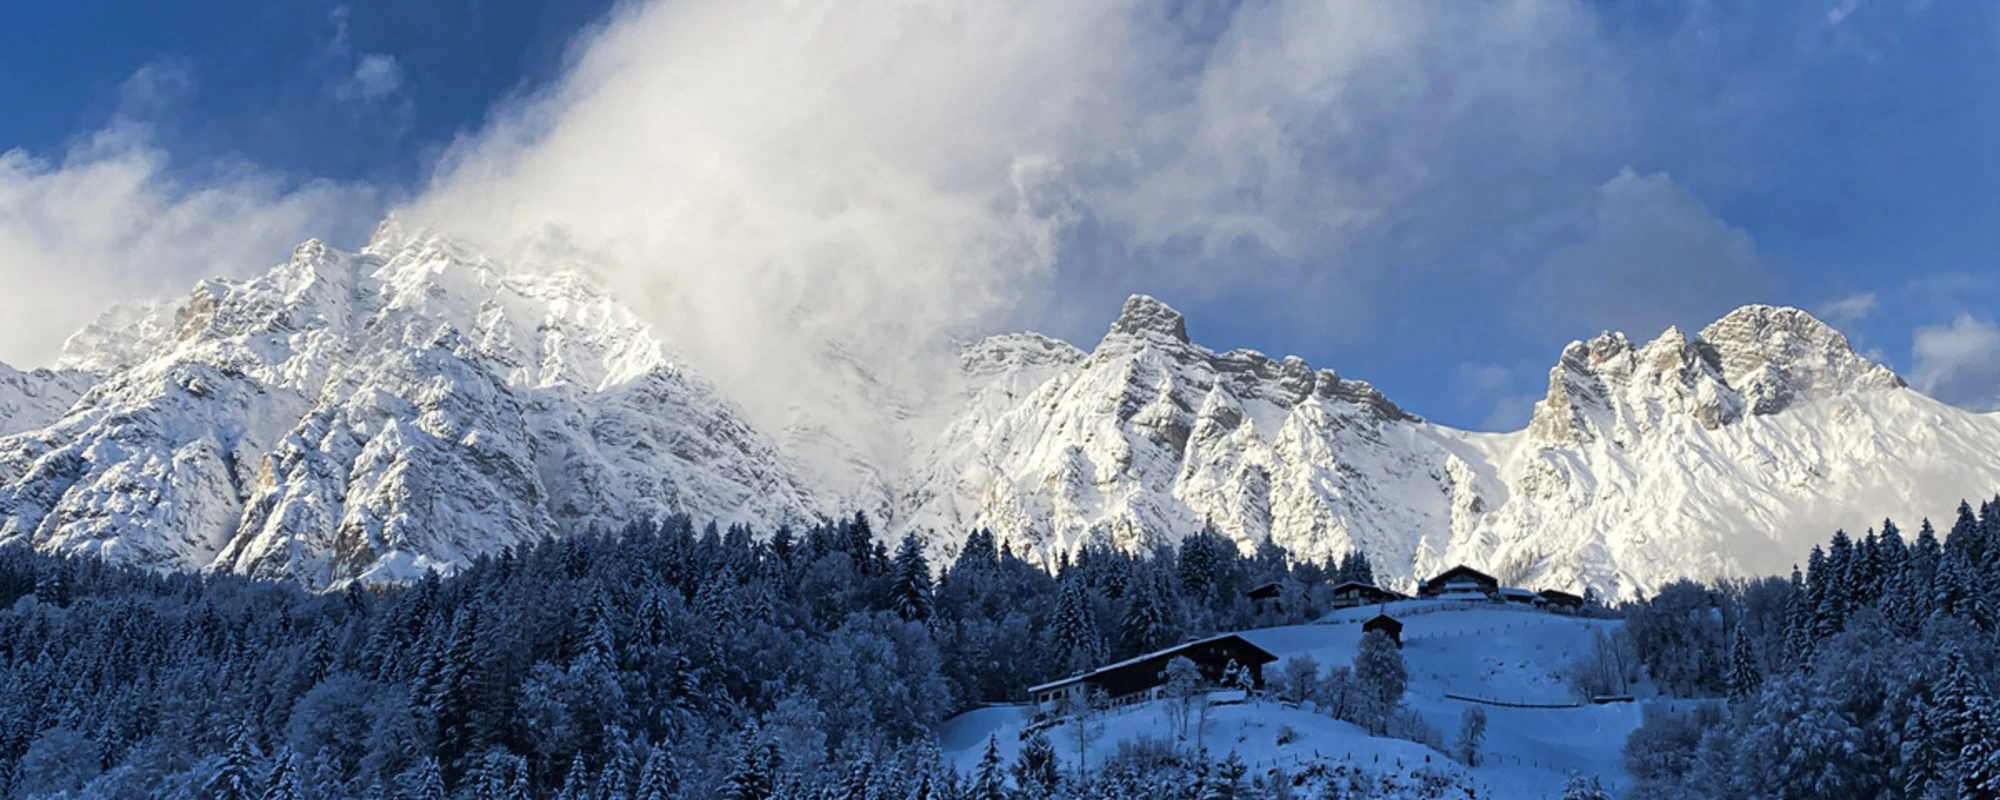 Eindrucksvolles Bergpanorama im Winter